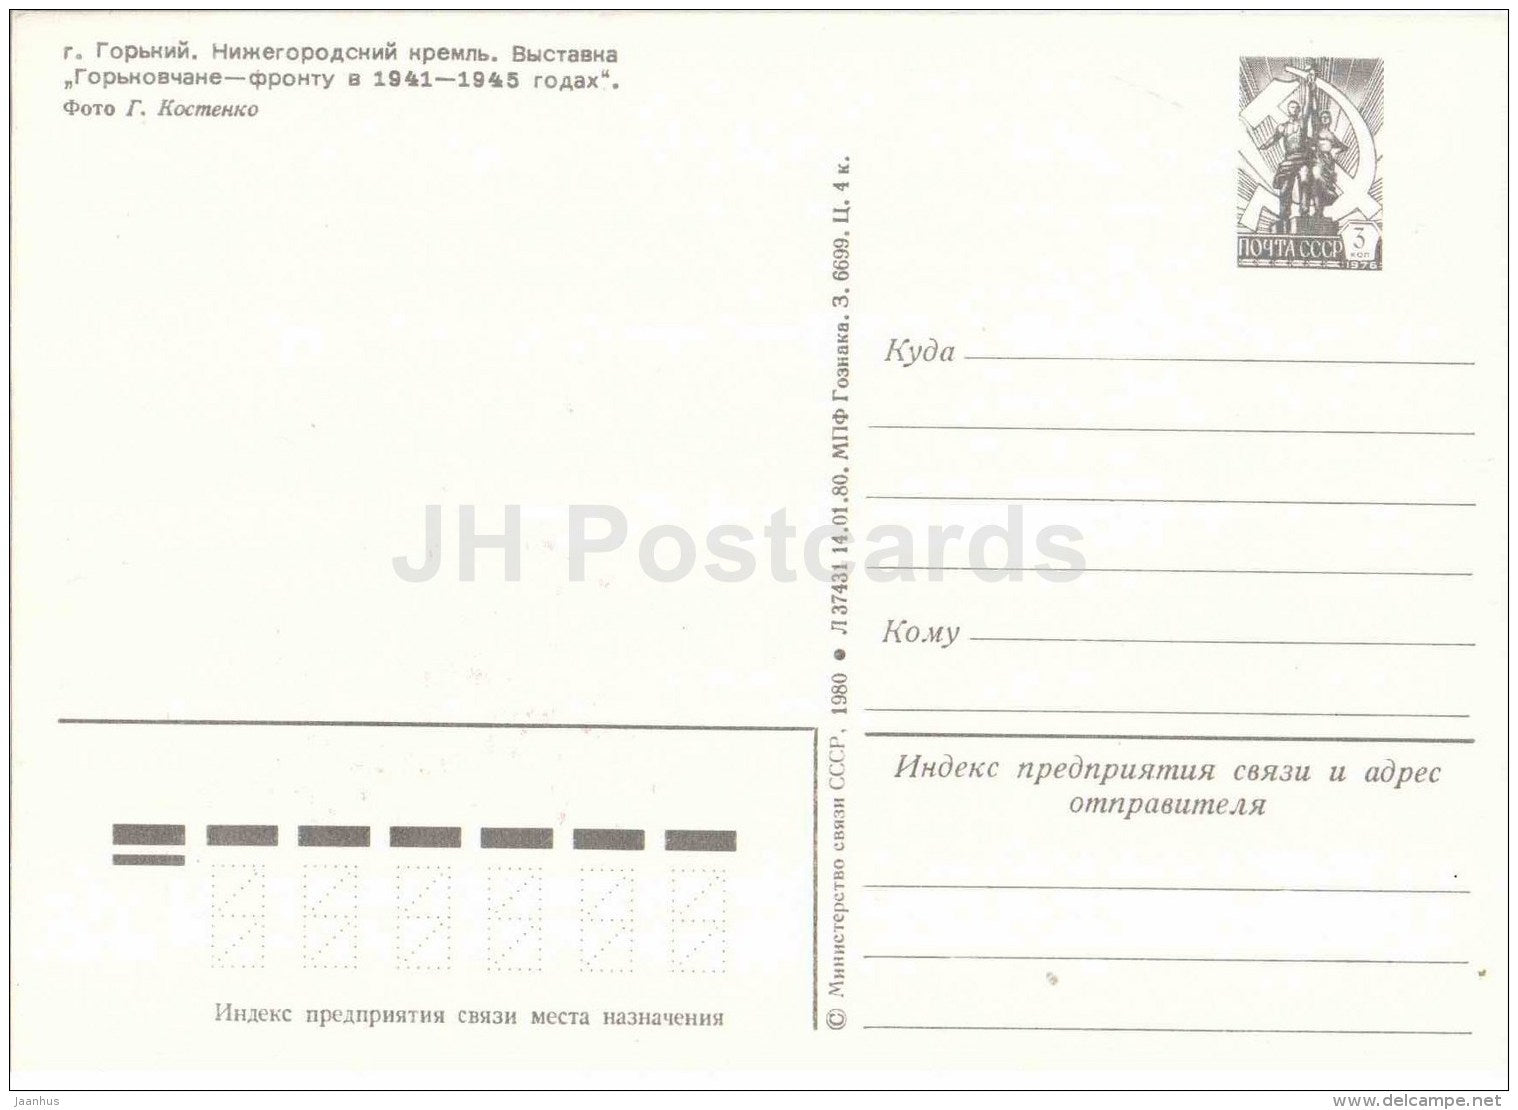 Kremlin - exhibition - warplane - tank - Gorky - Nizhny Novgorod - postal stationery - 1980 - Russia USSR - unused - JH Postcards